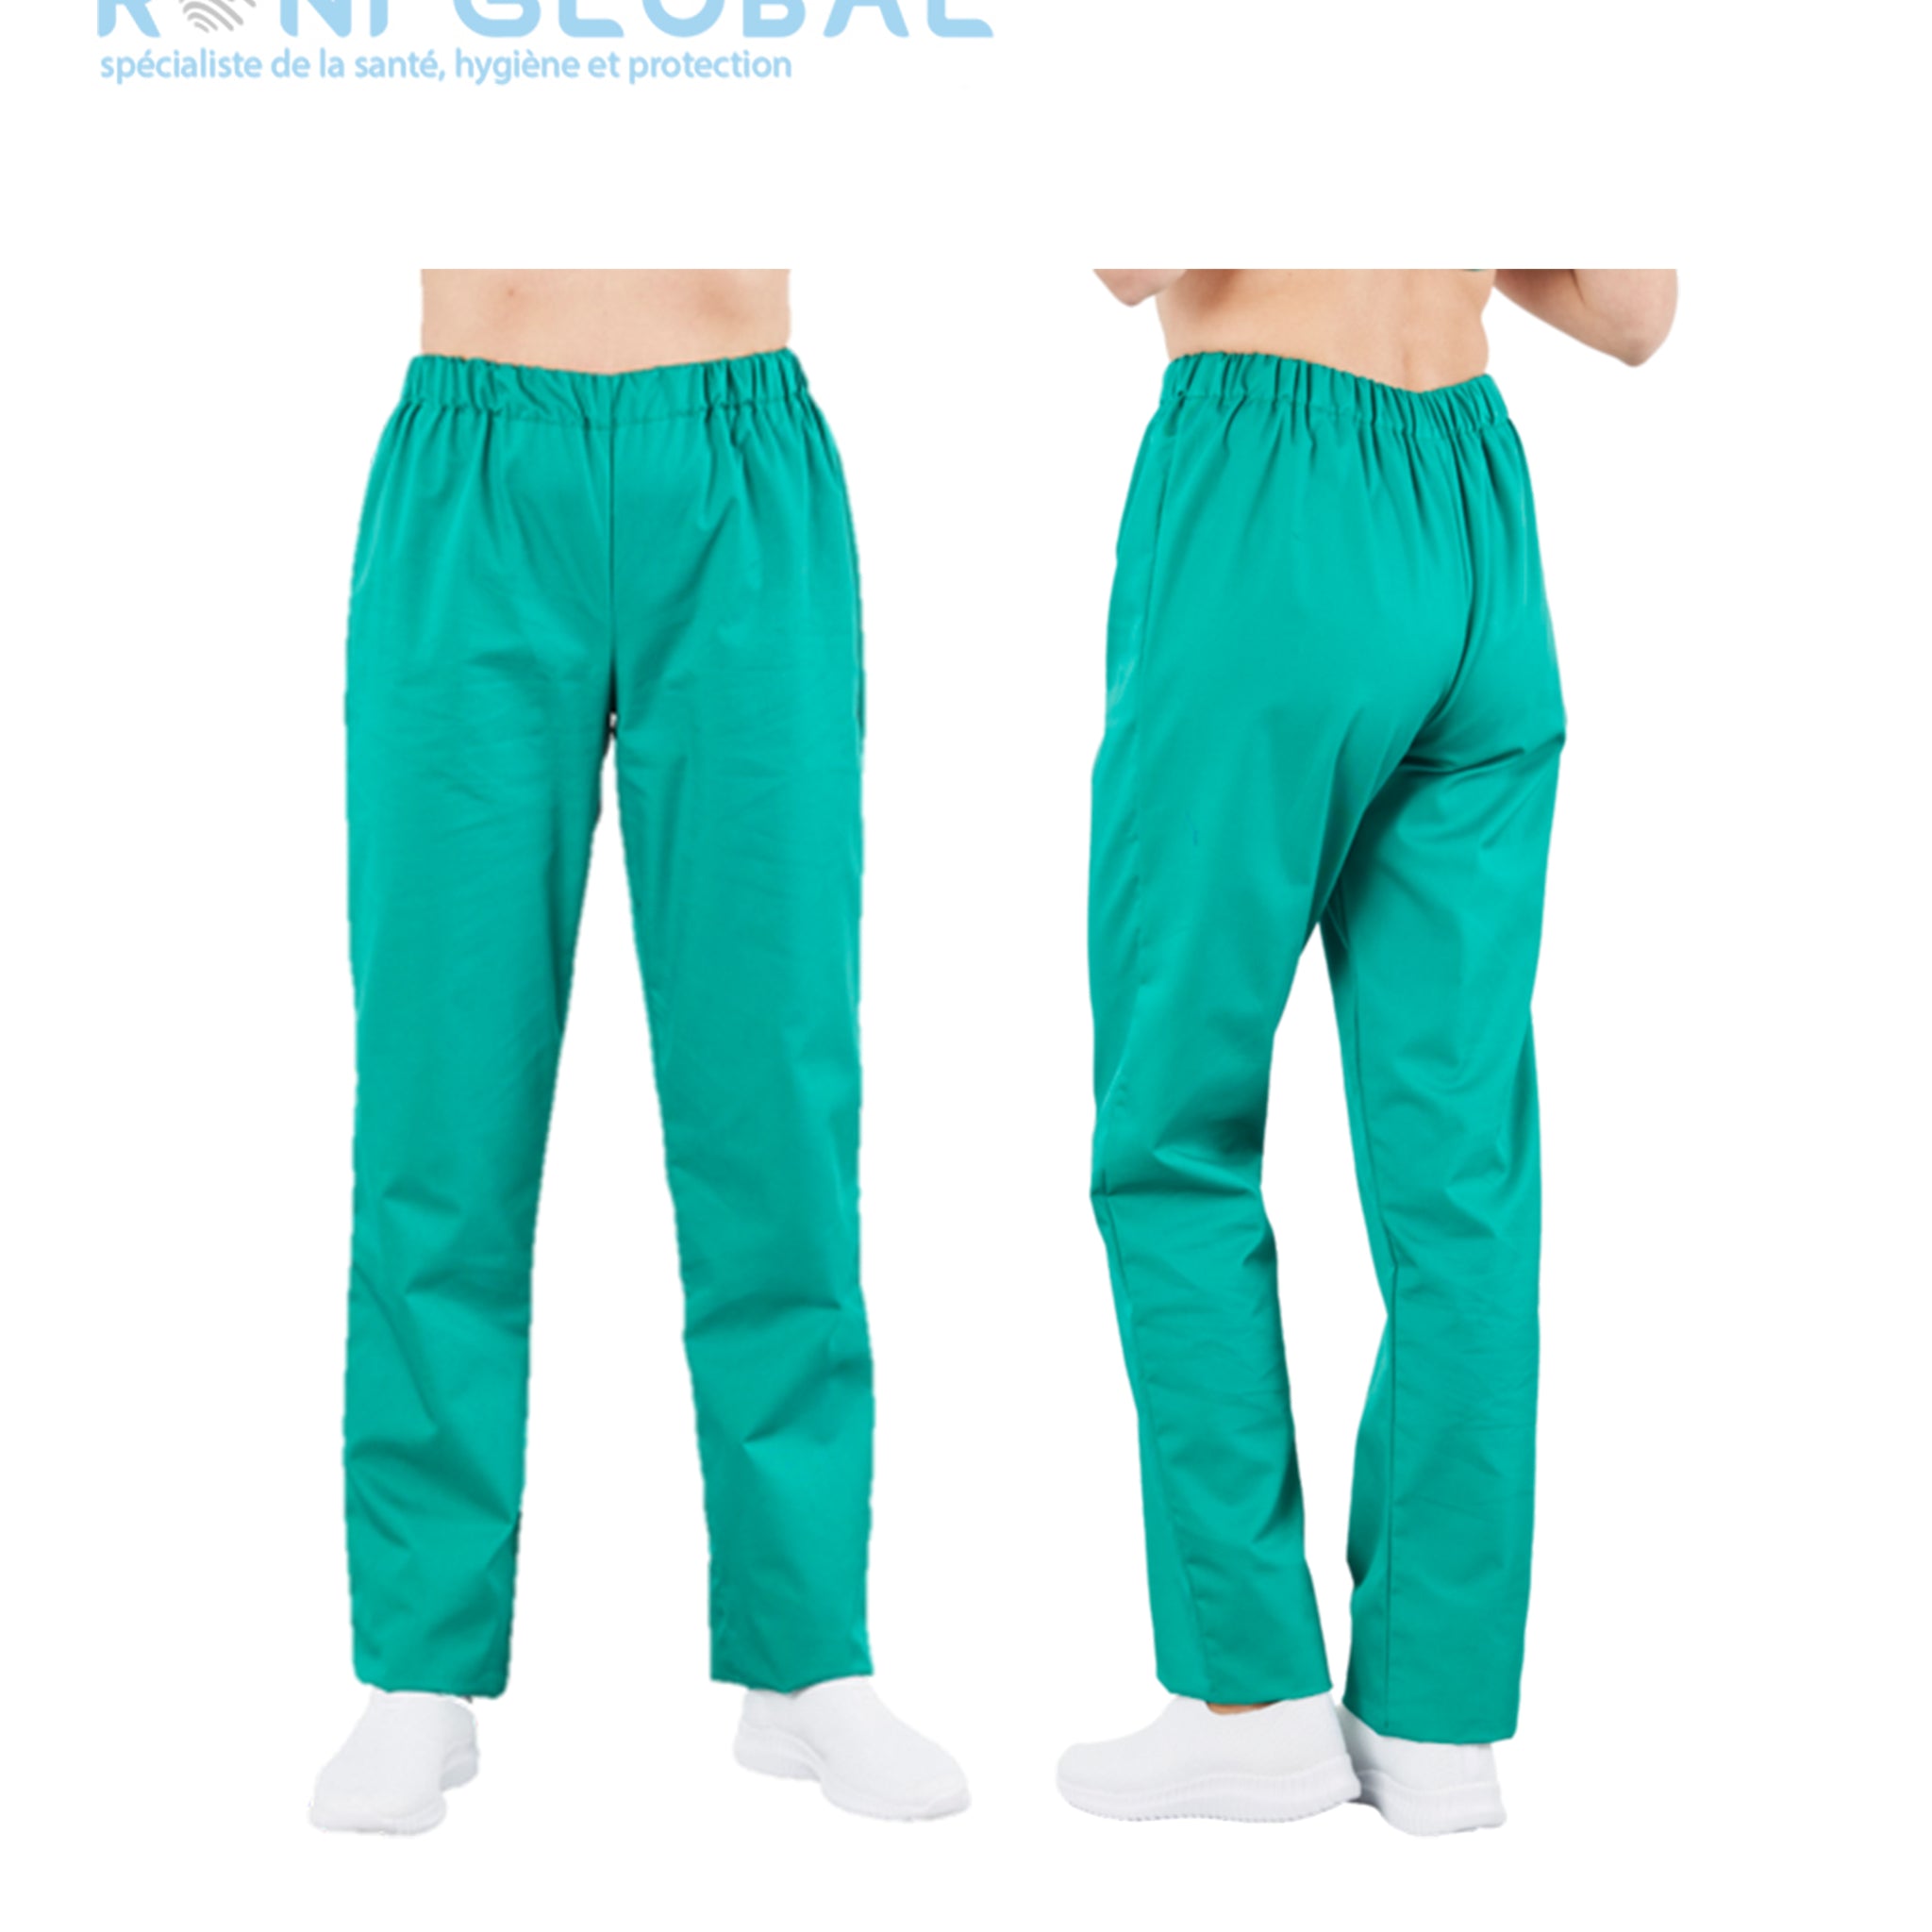 Pantalon de travail médical unisexe taille élastiquée, en coton/polyester - PACO PBV